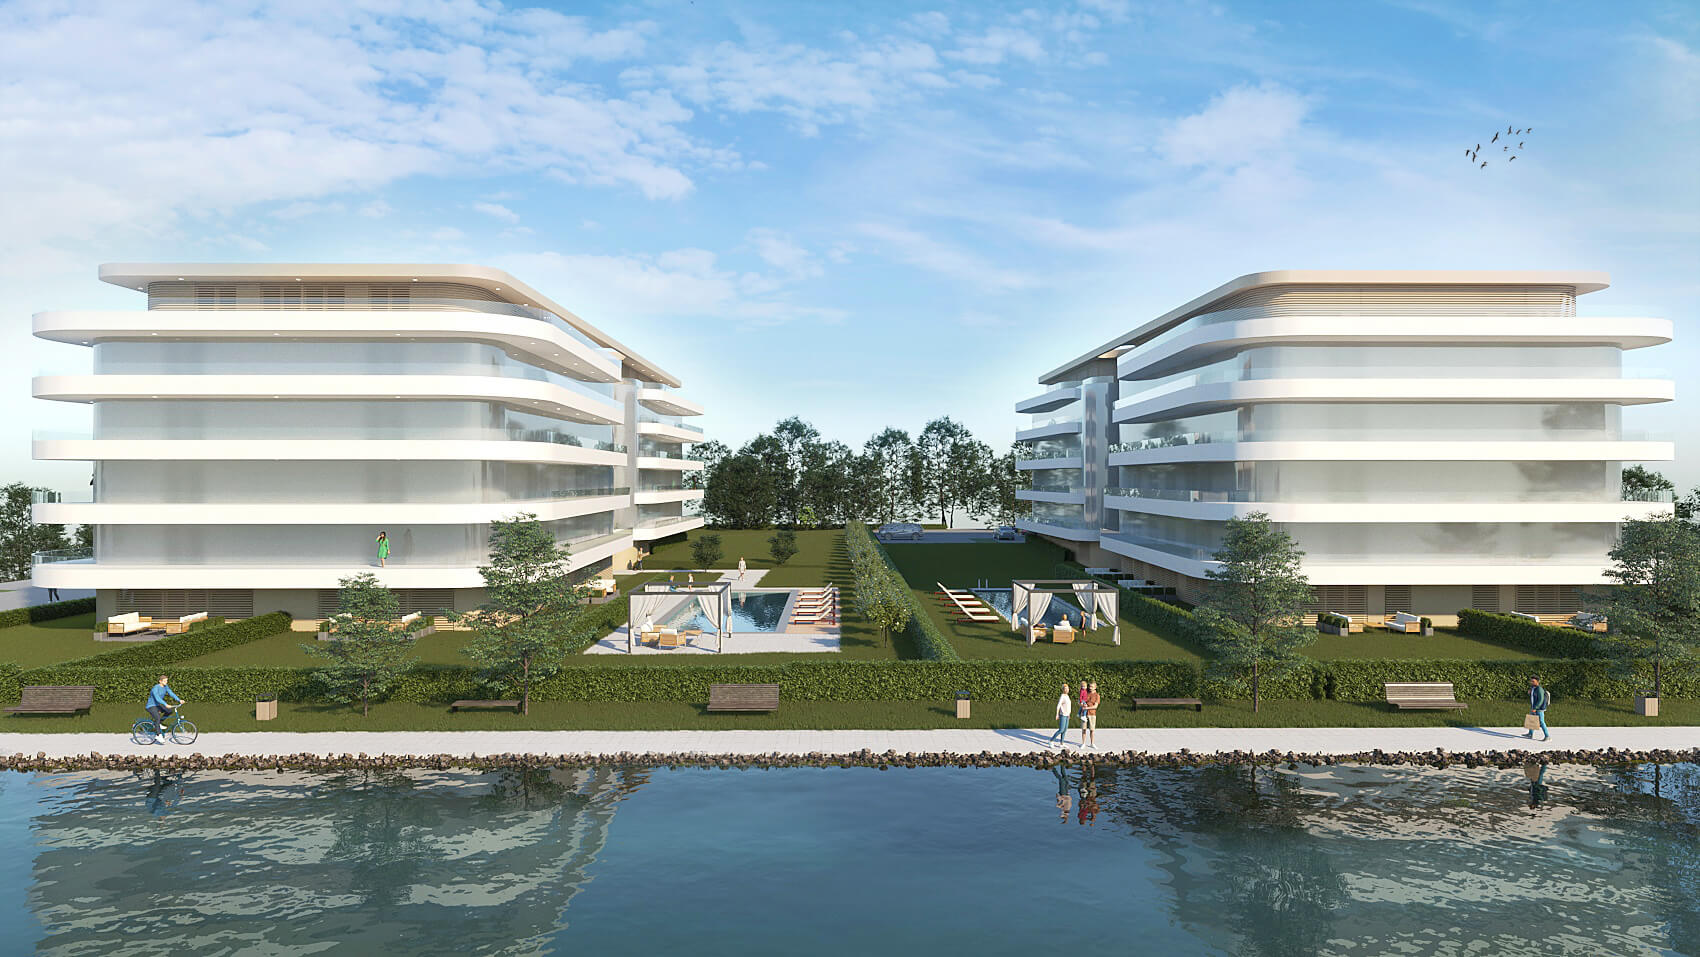 Tombol a nyár! – Mikor máskor, ha nem most csobbannál bele egy új építésű projektbe a Balaton parton?